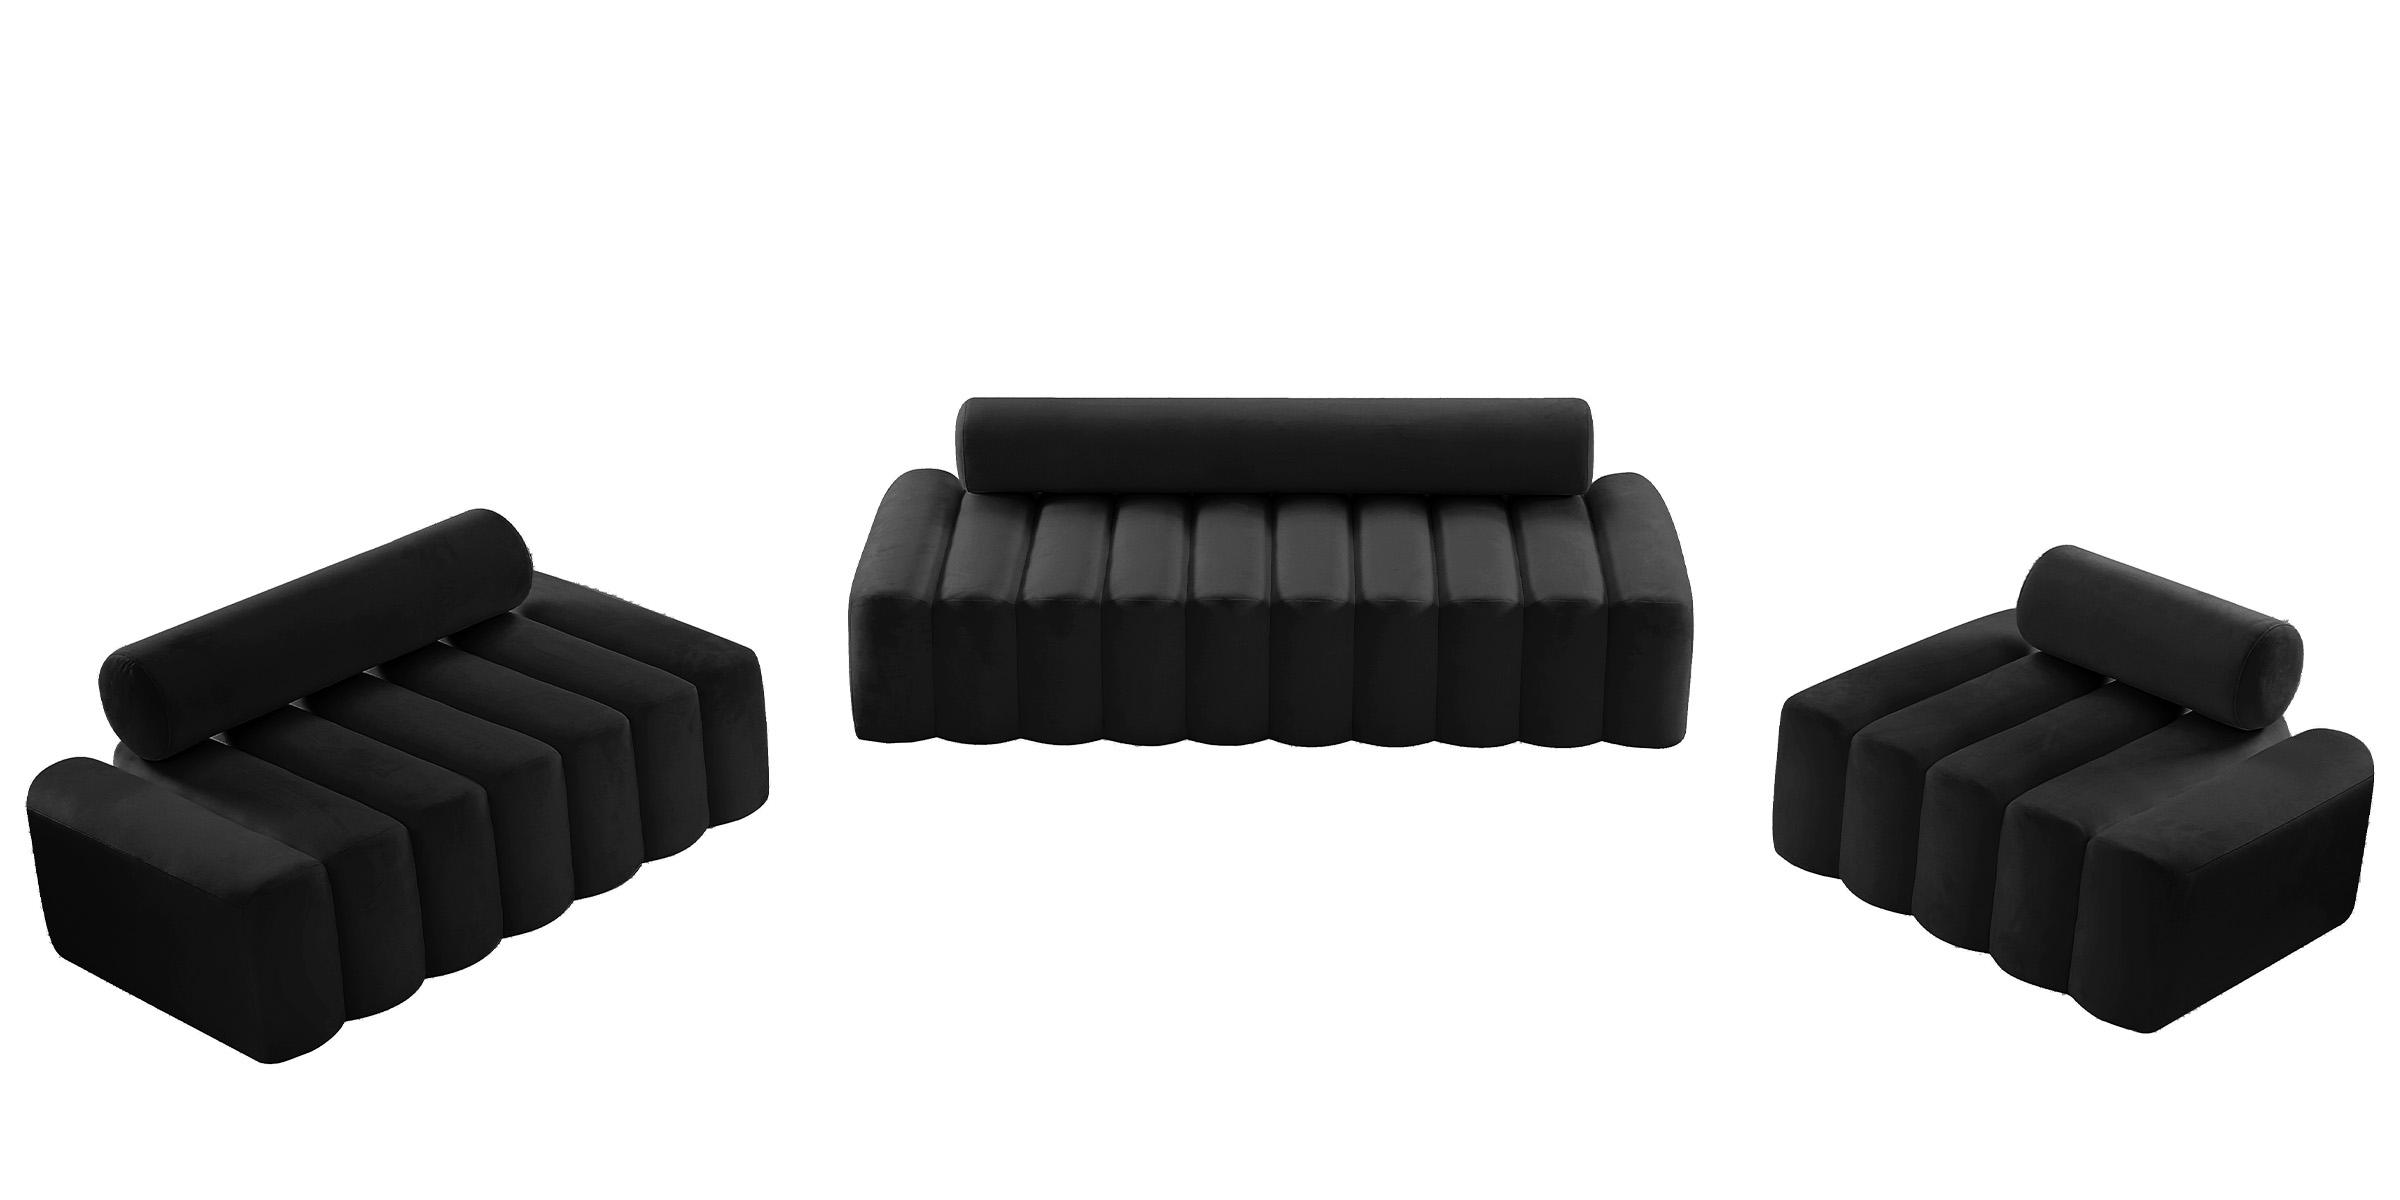 

    
Glam BLACK Velvet Channel Tufted Sofa Set 3Pcs Melody 647Black Meridian Modern
